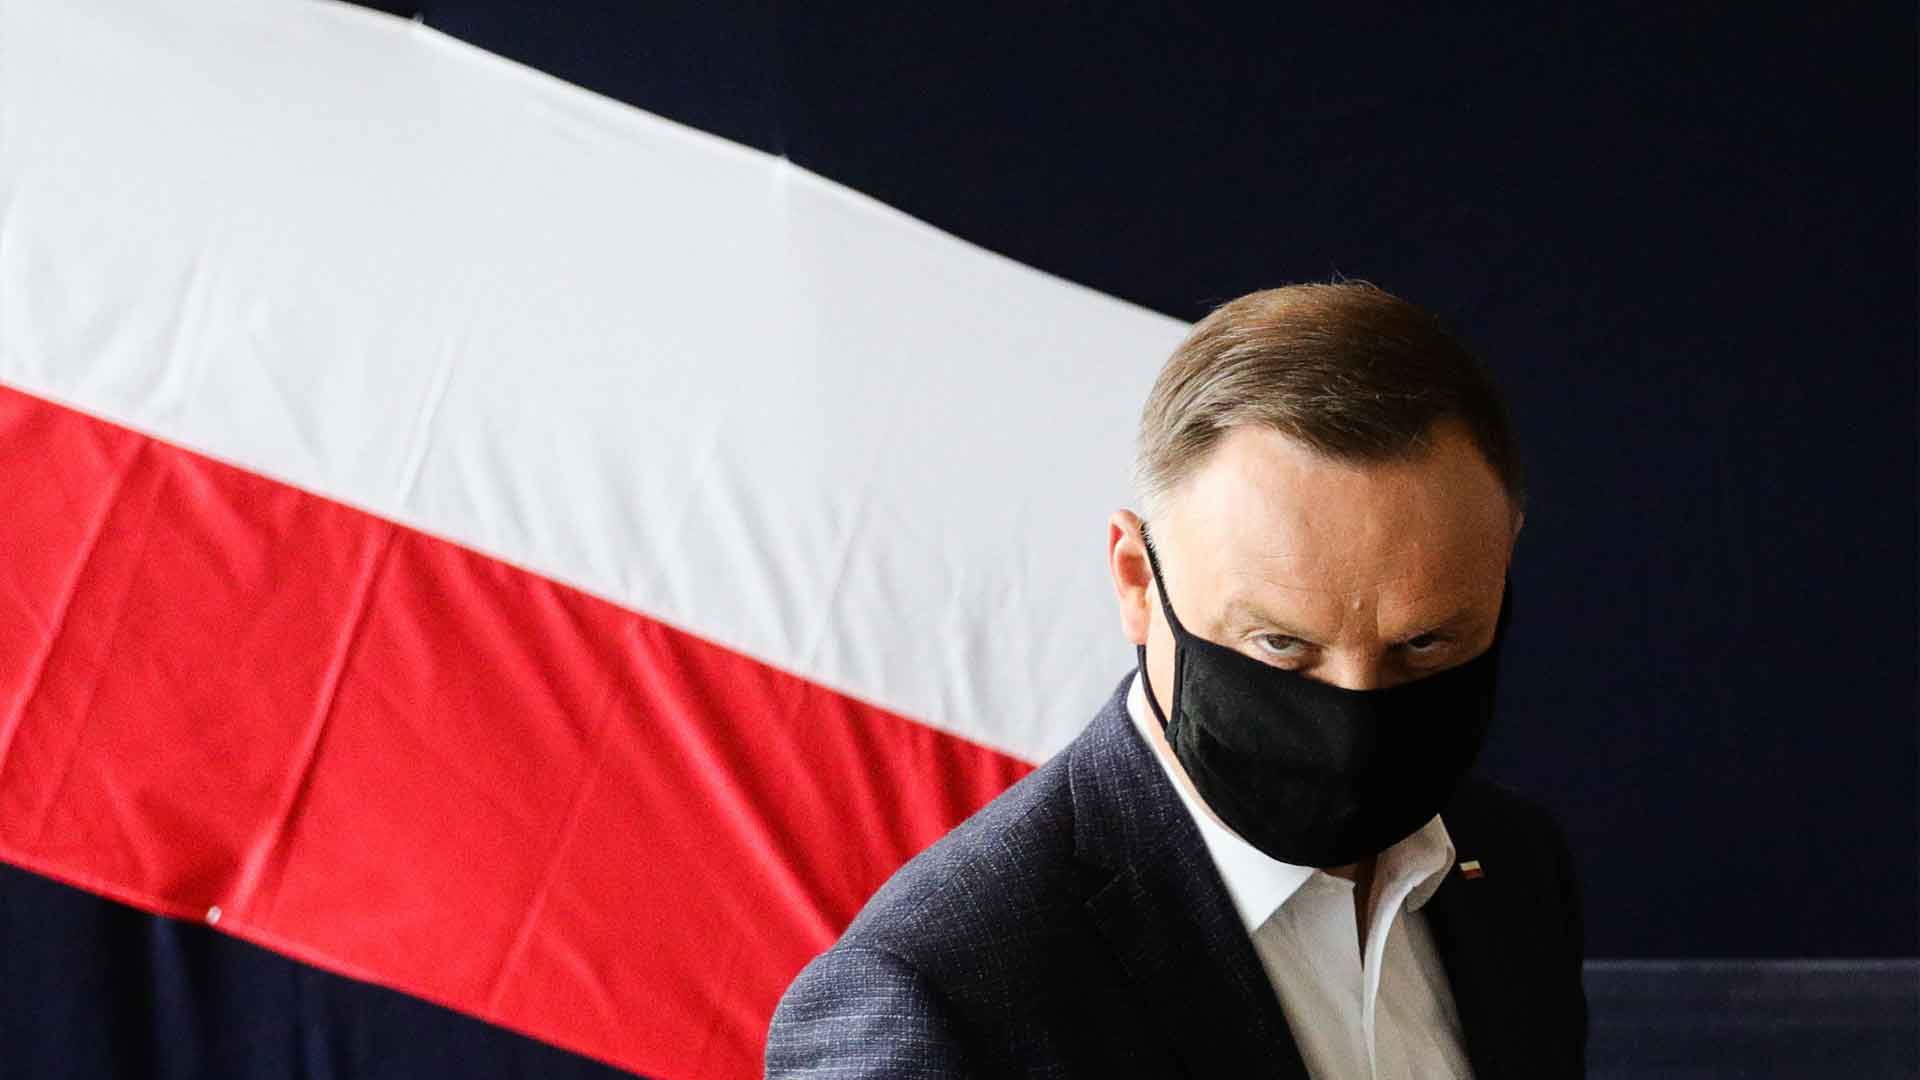 Президент Польши заявил, что заподозрил неладное во время беседы с российскими пранкерами, выдавшими себя за генсека ООН Фото: © GLOBAL LOOK press / Filip Radwanski